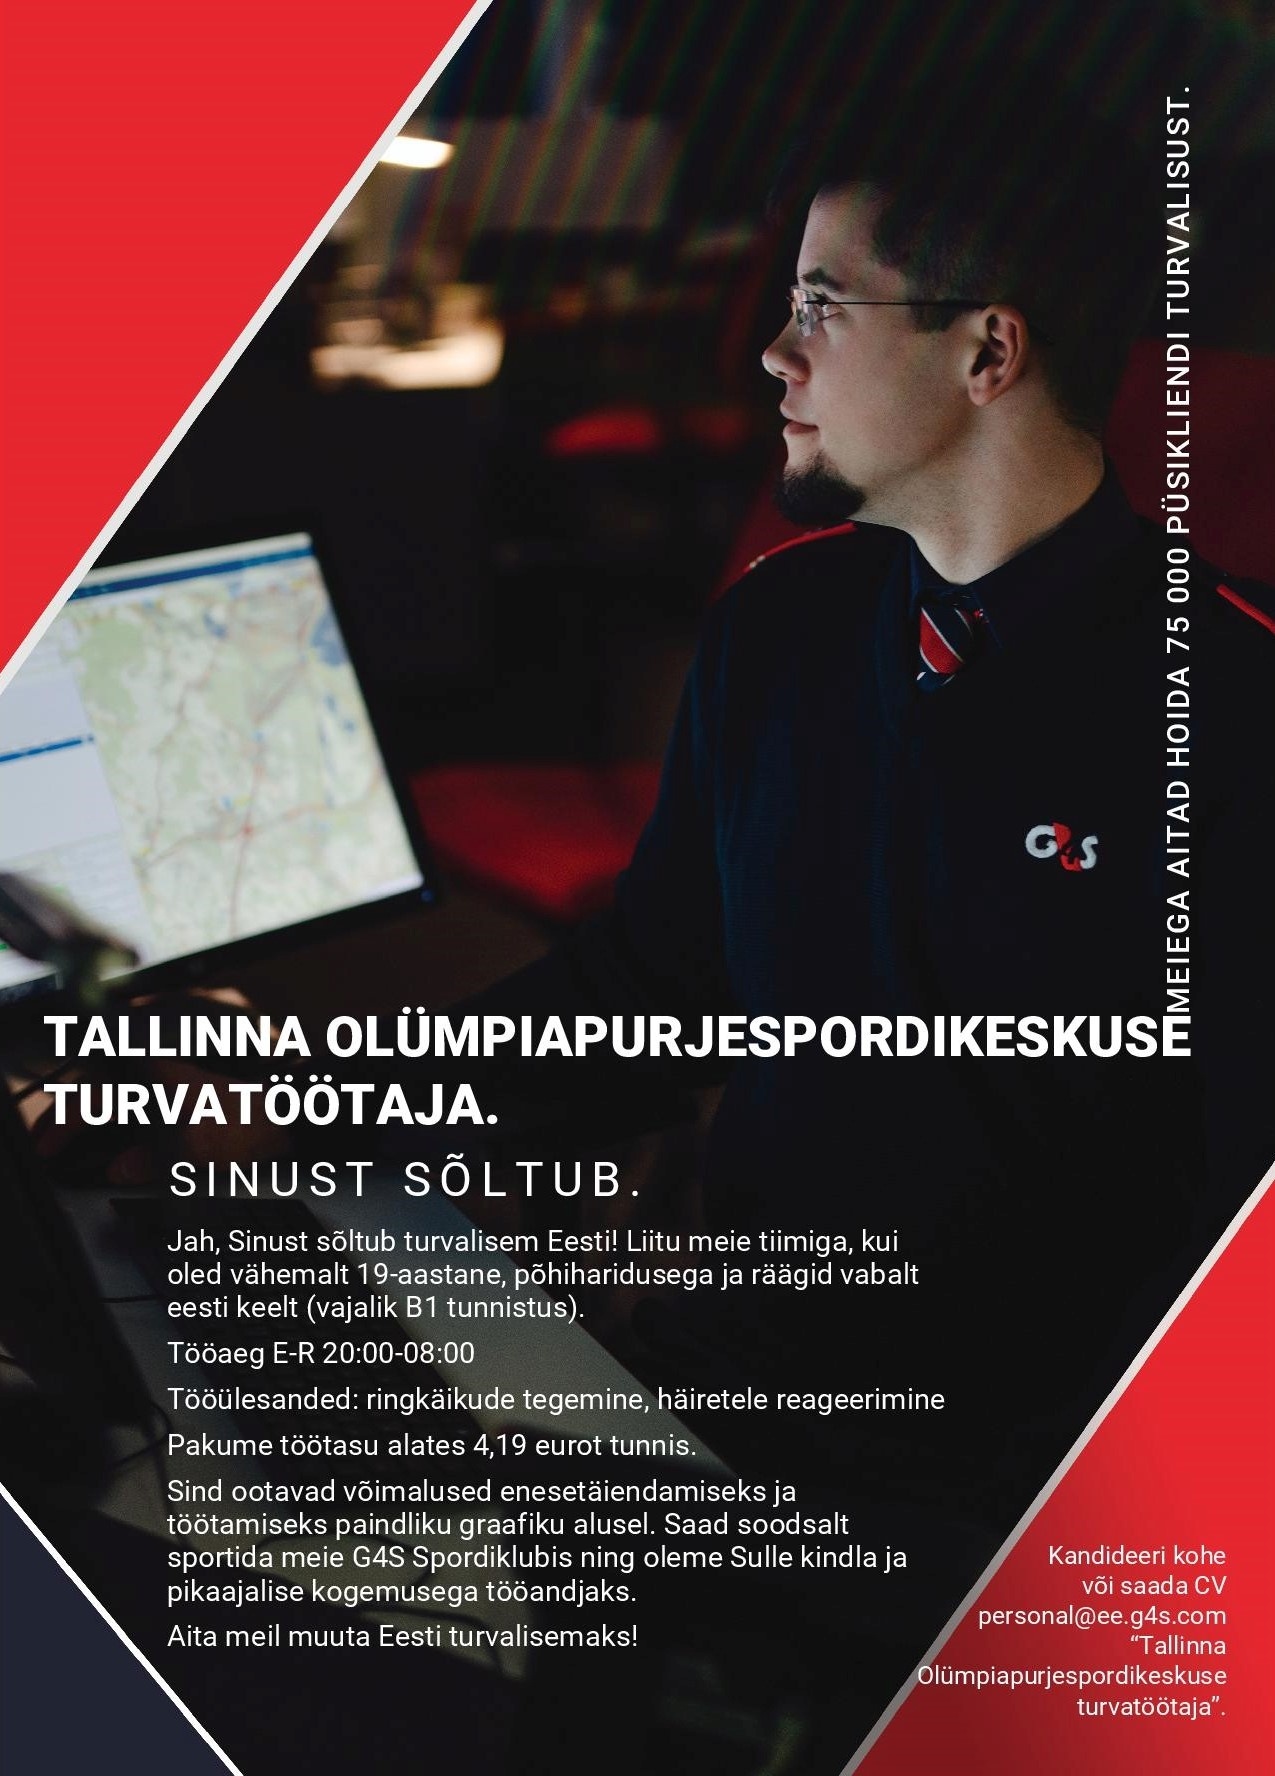 CVKeskus.ee klient Tallinna Olümpiapurjespordikeskuse turvatöötaja